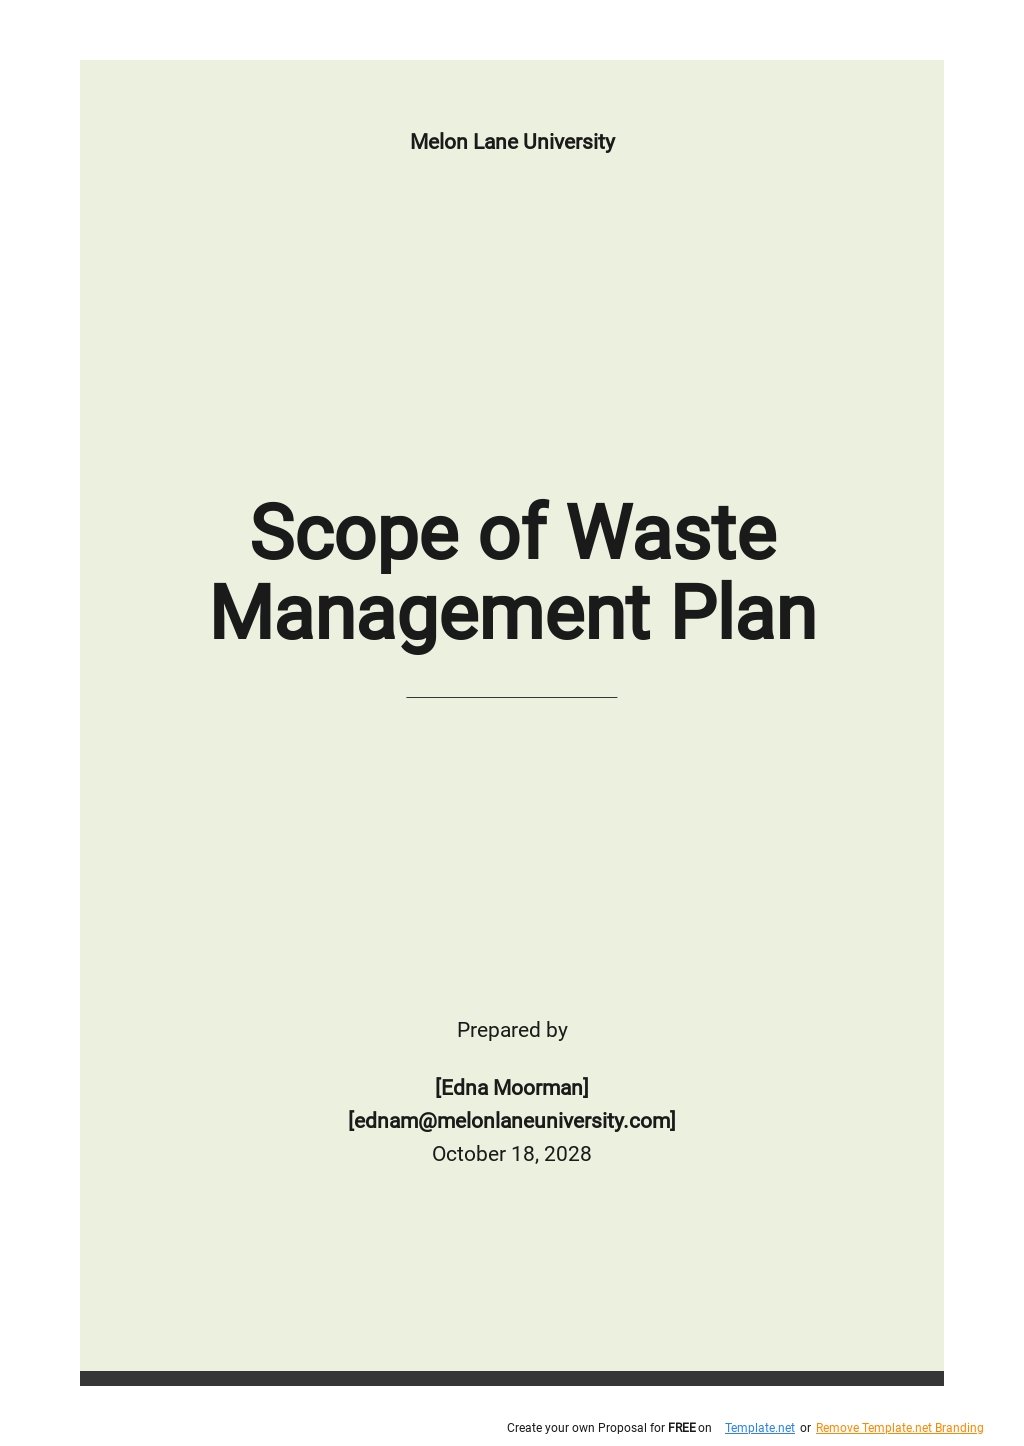 flower waste management business plan